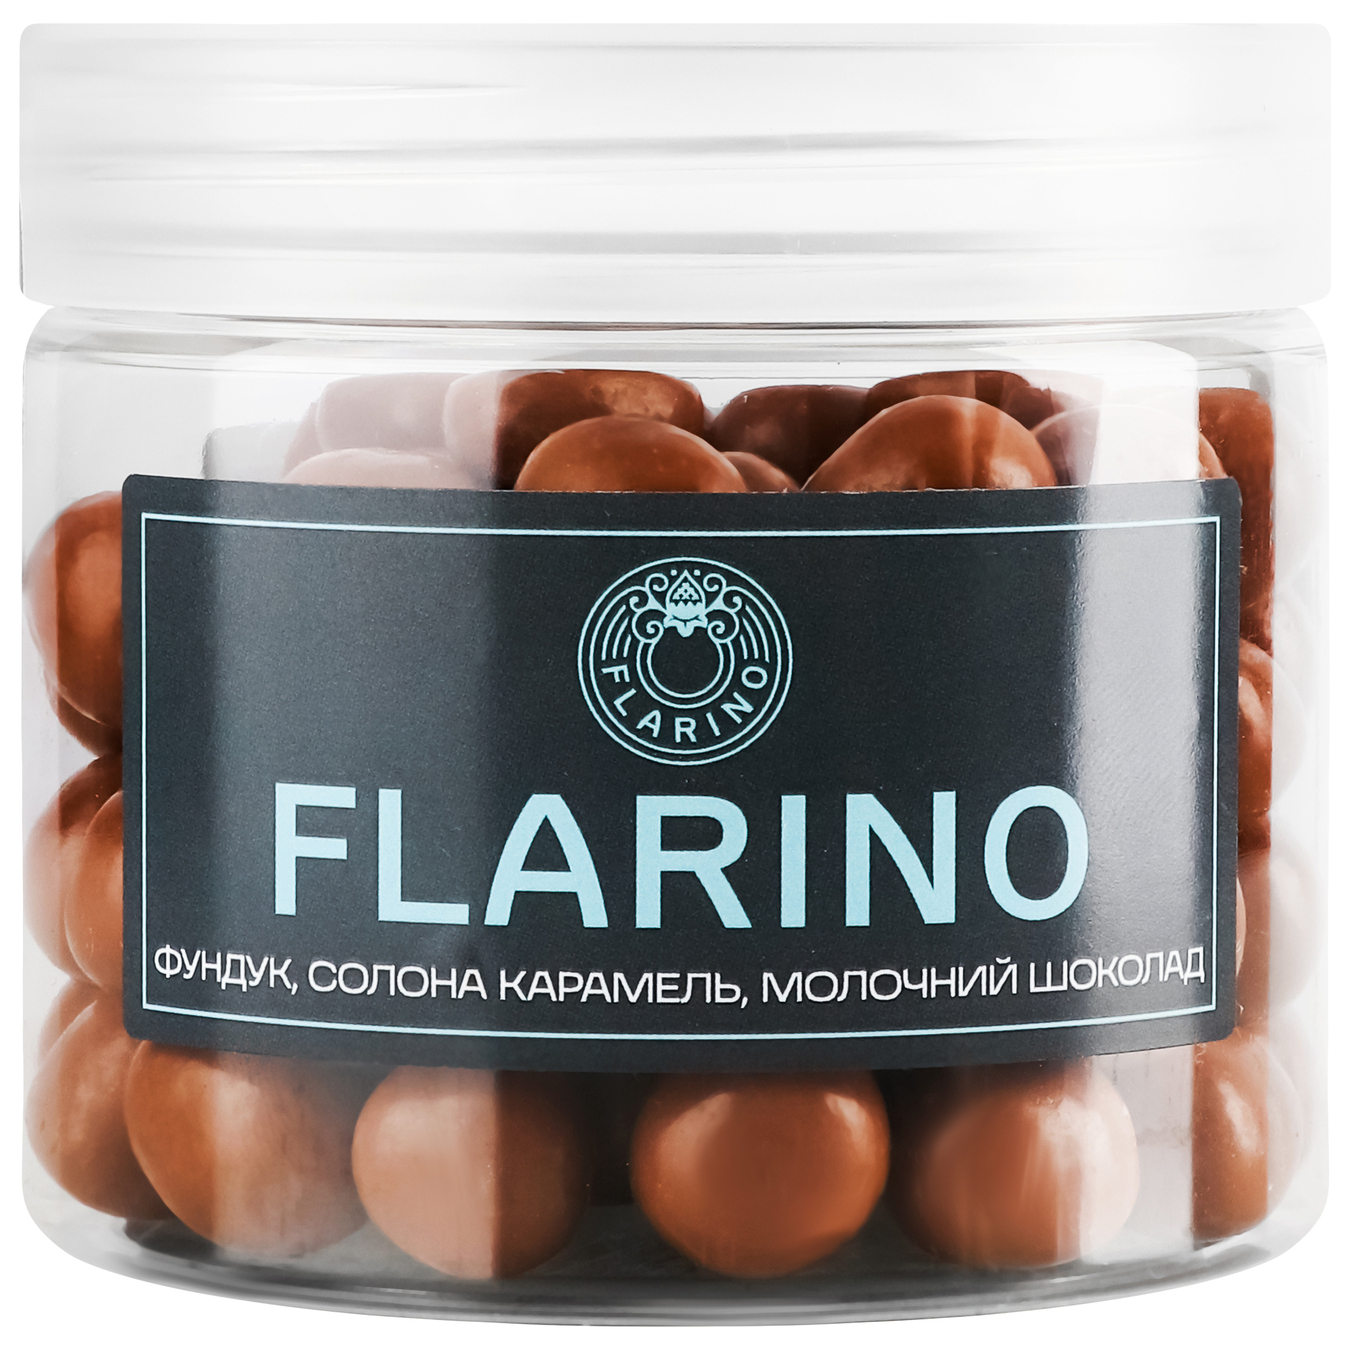 Фундук Flarino в соленой карамели покрыт молочным шоколадом 180г.